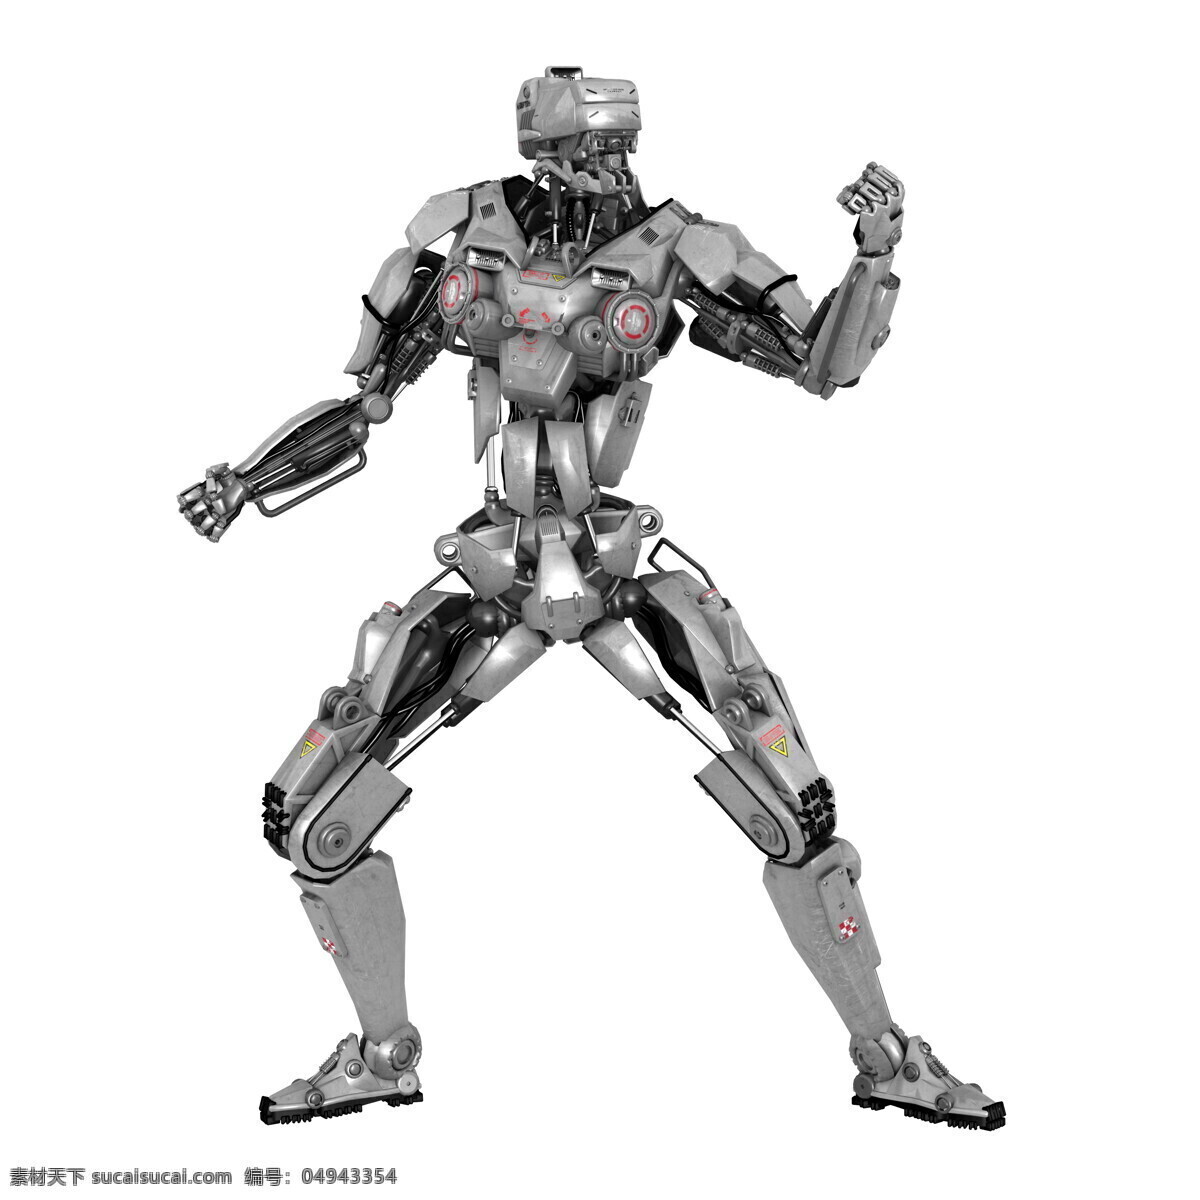 机器人 未来 战士 未来战士 机器人战士 机器人模型 未来科技 其他人物 人物图片